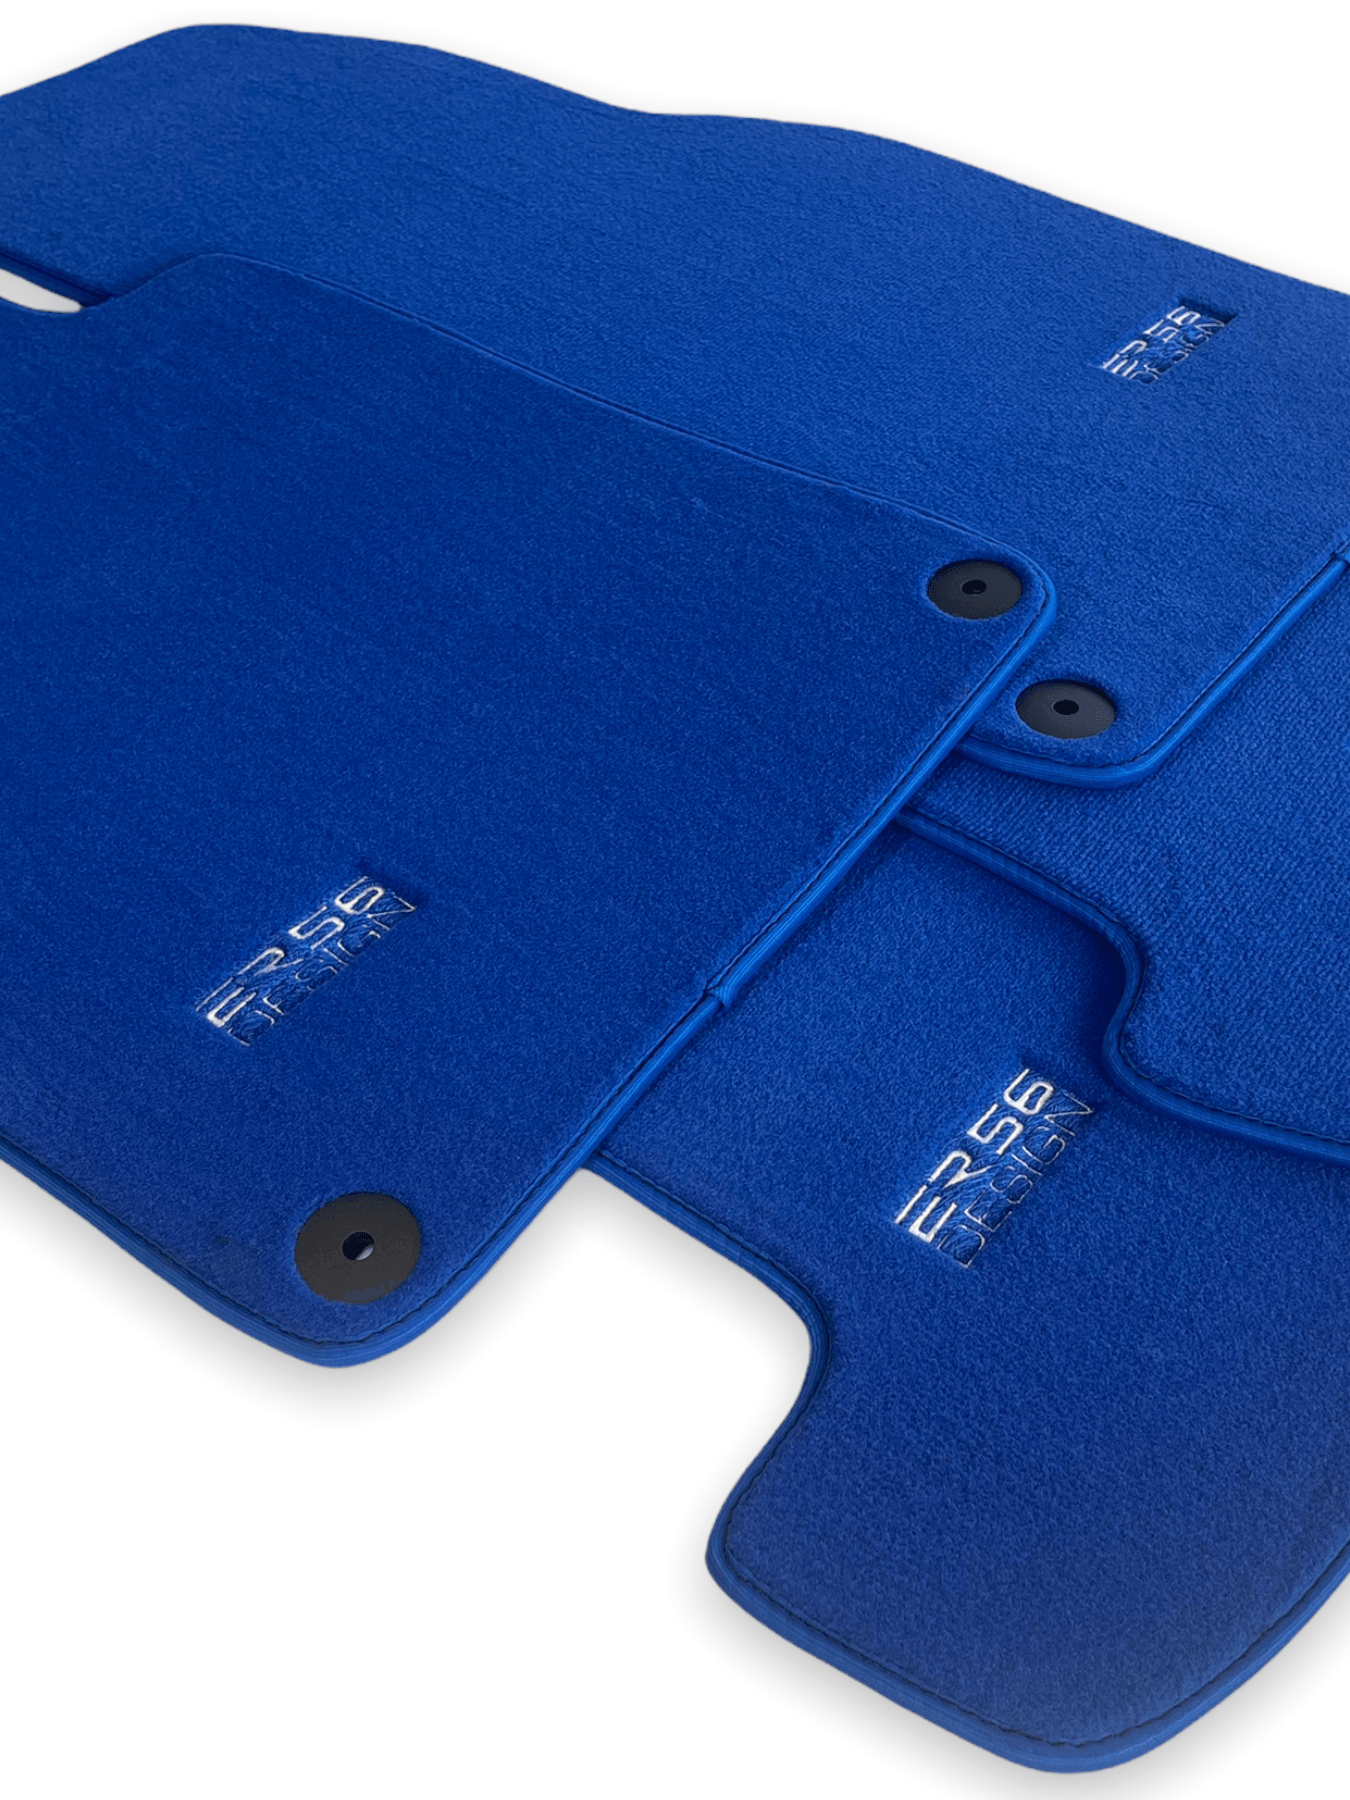 Blue Floor Mats for Porsche Taycan (2019-2023) | ER56 Design - AutoWin